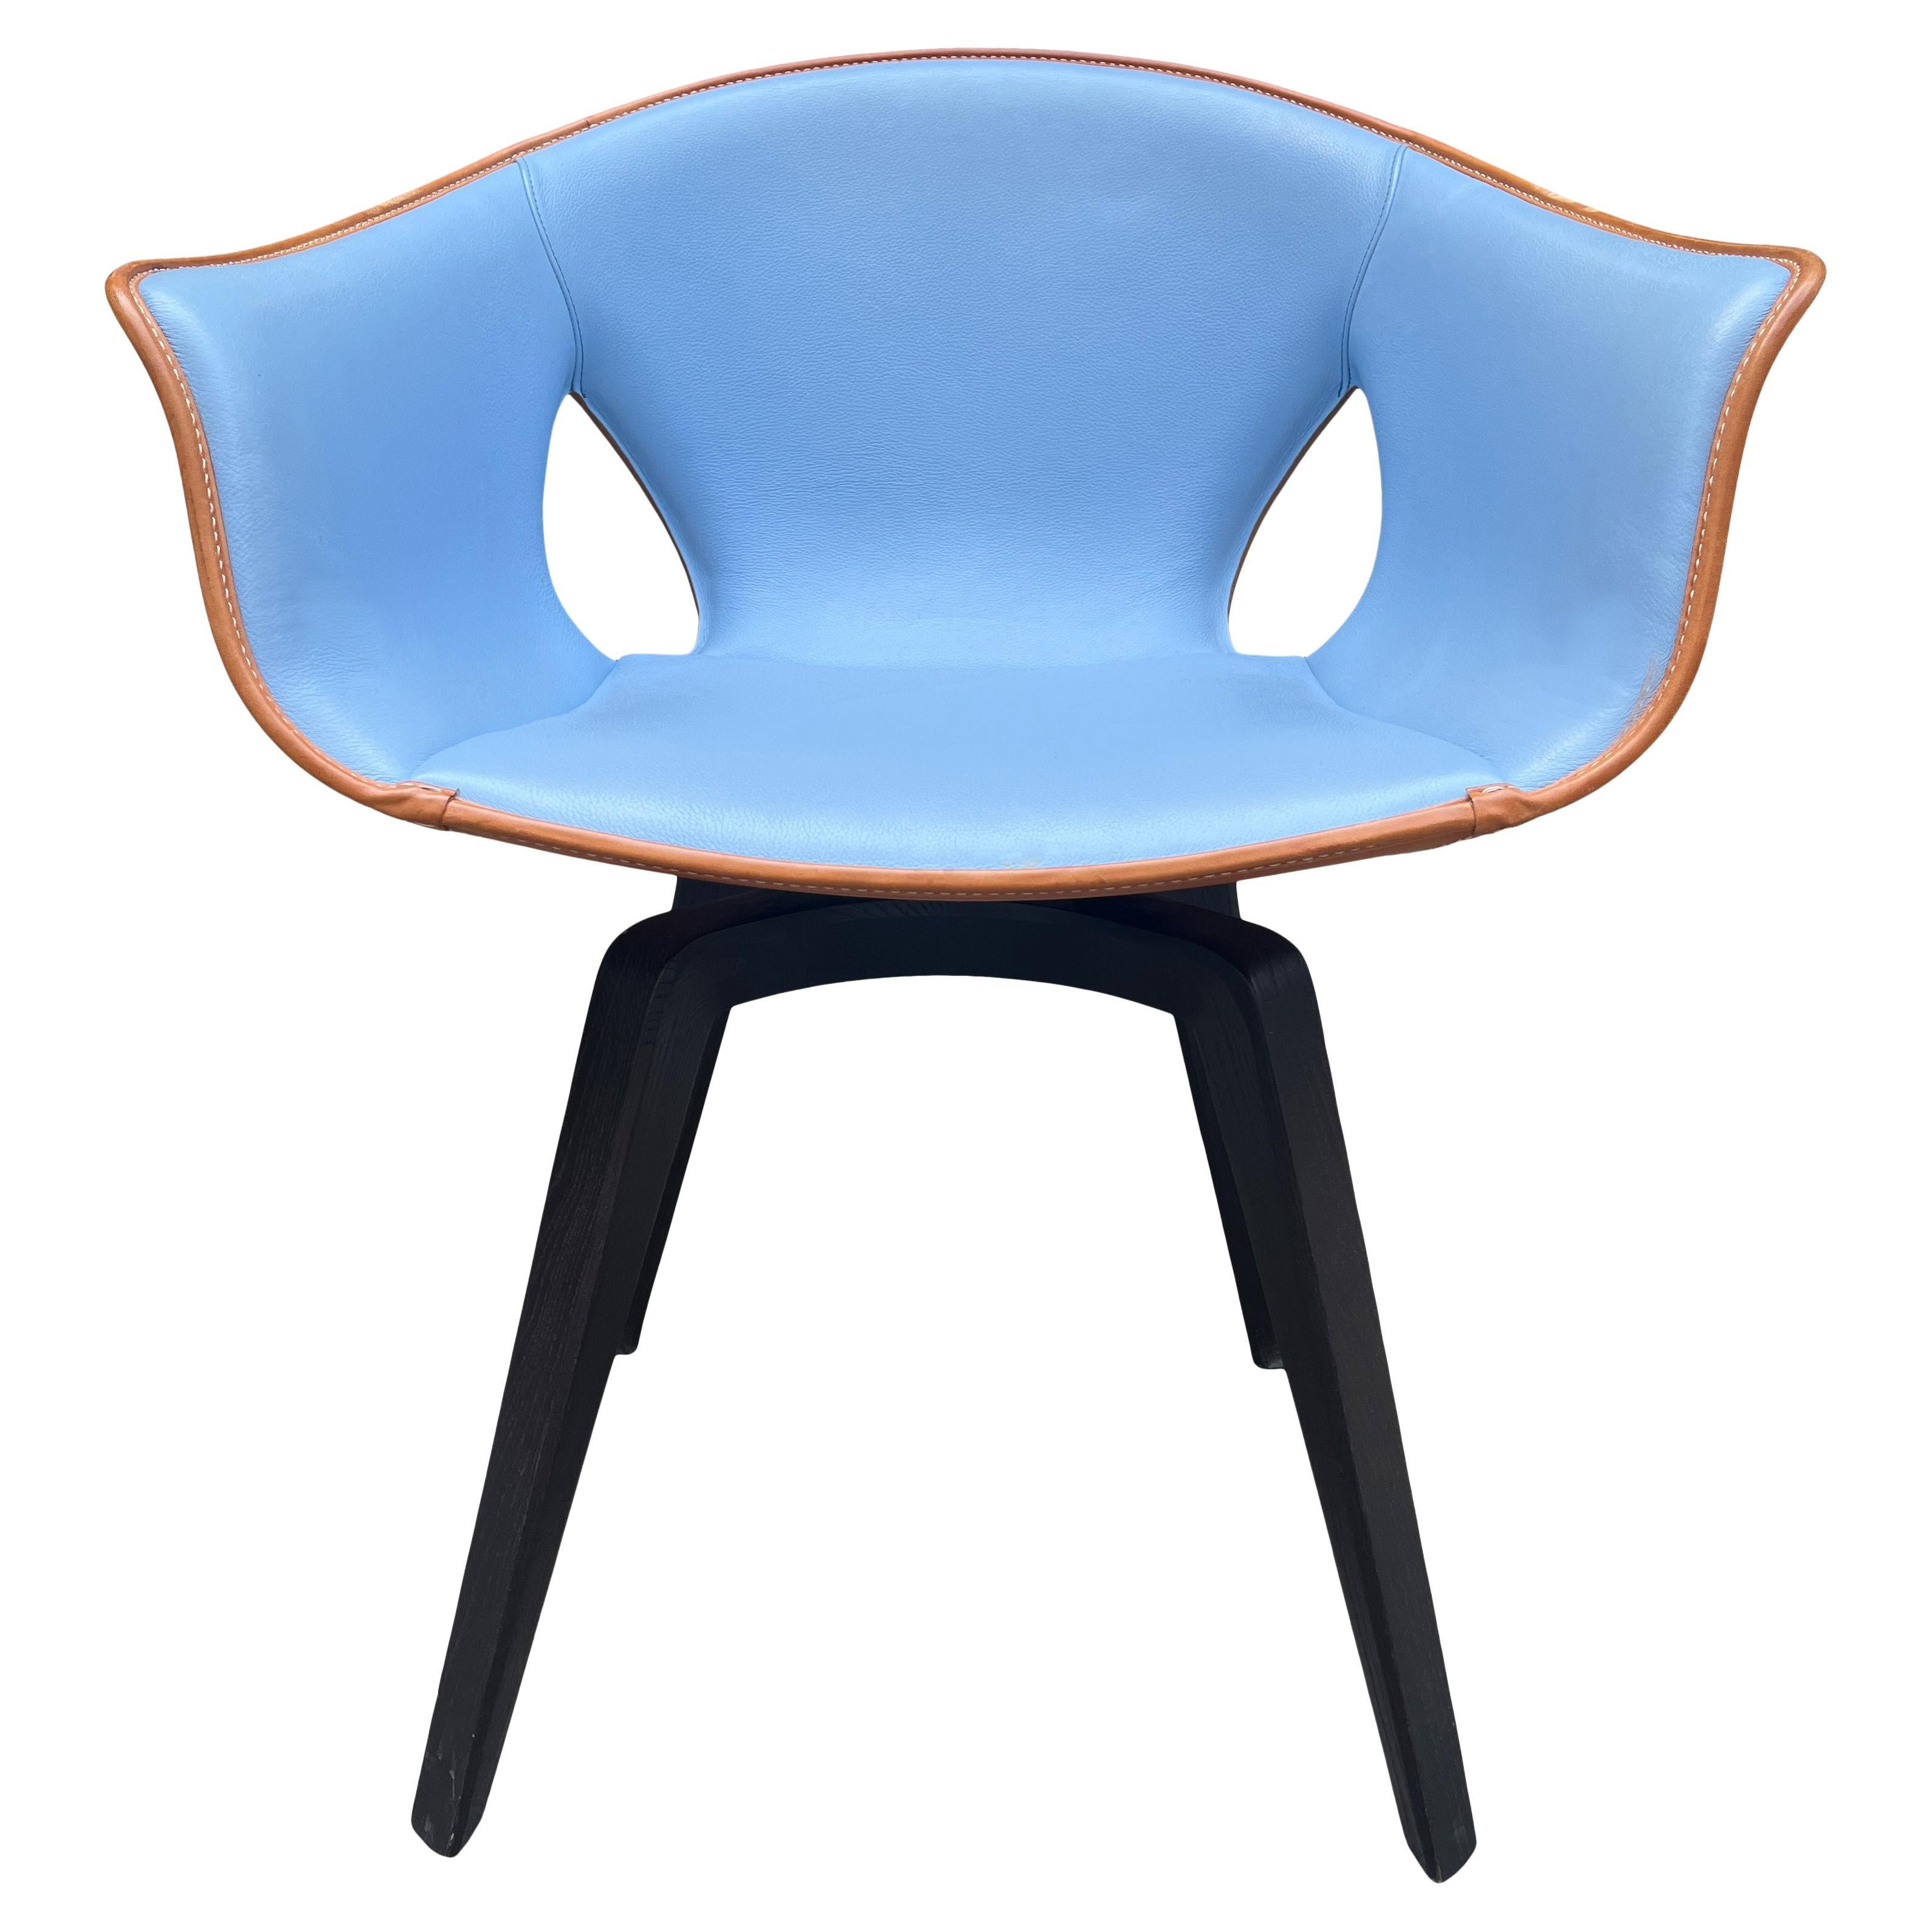 La chaise post-moderne Ginger de Roberto Lazzeroni pour Poltrona Frau avec du cuir marron sellier et bleu ciel cousu à la main. Un look moderne magnifique. Le siège est doté d'une base pivotante en bois ébonisé. 